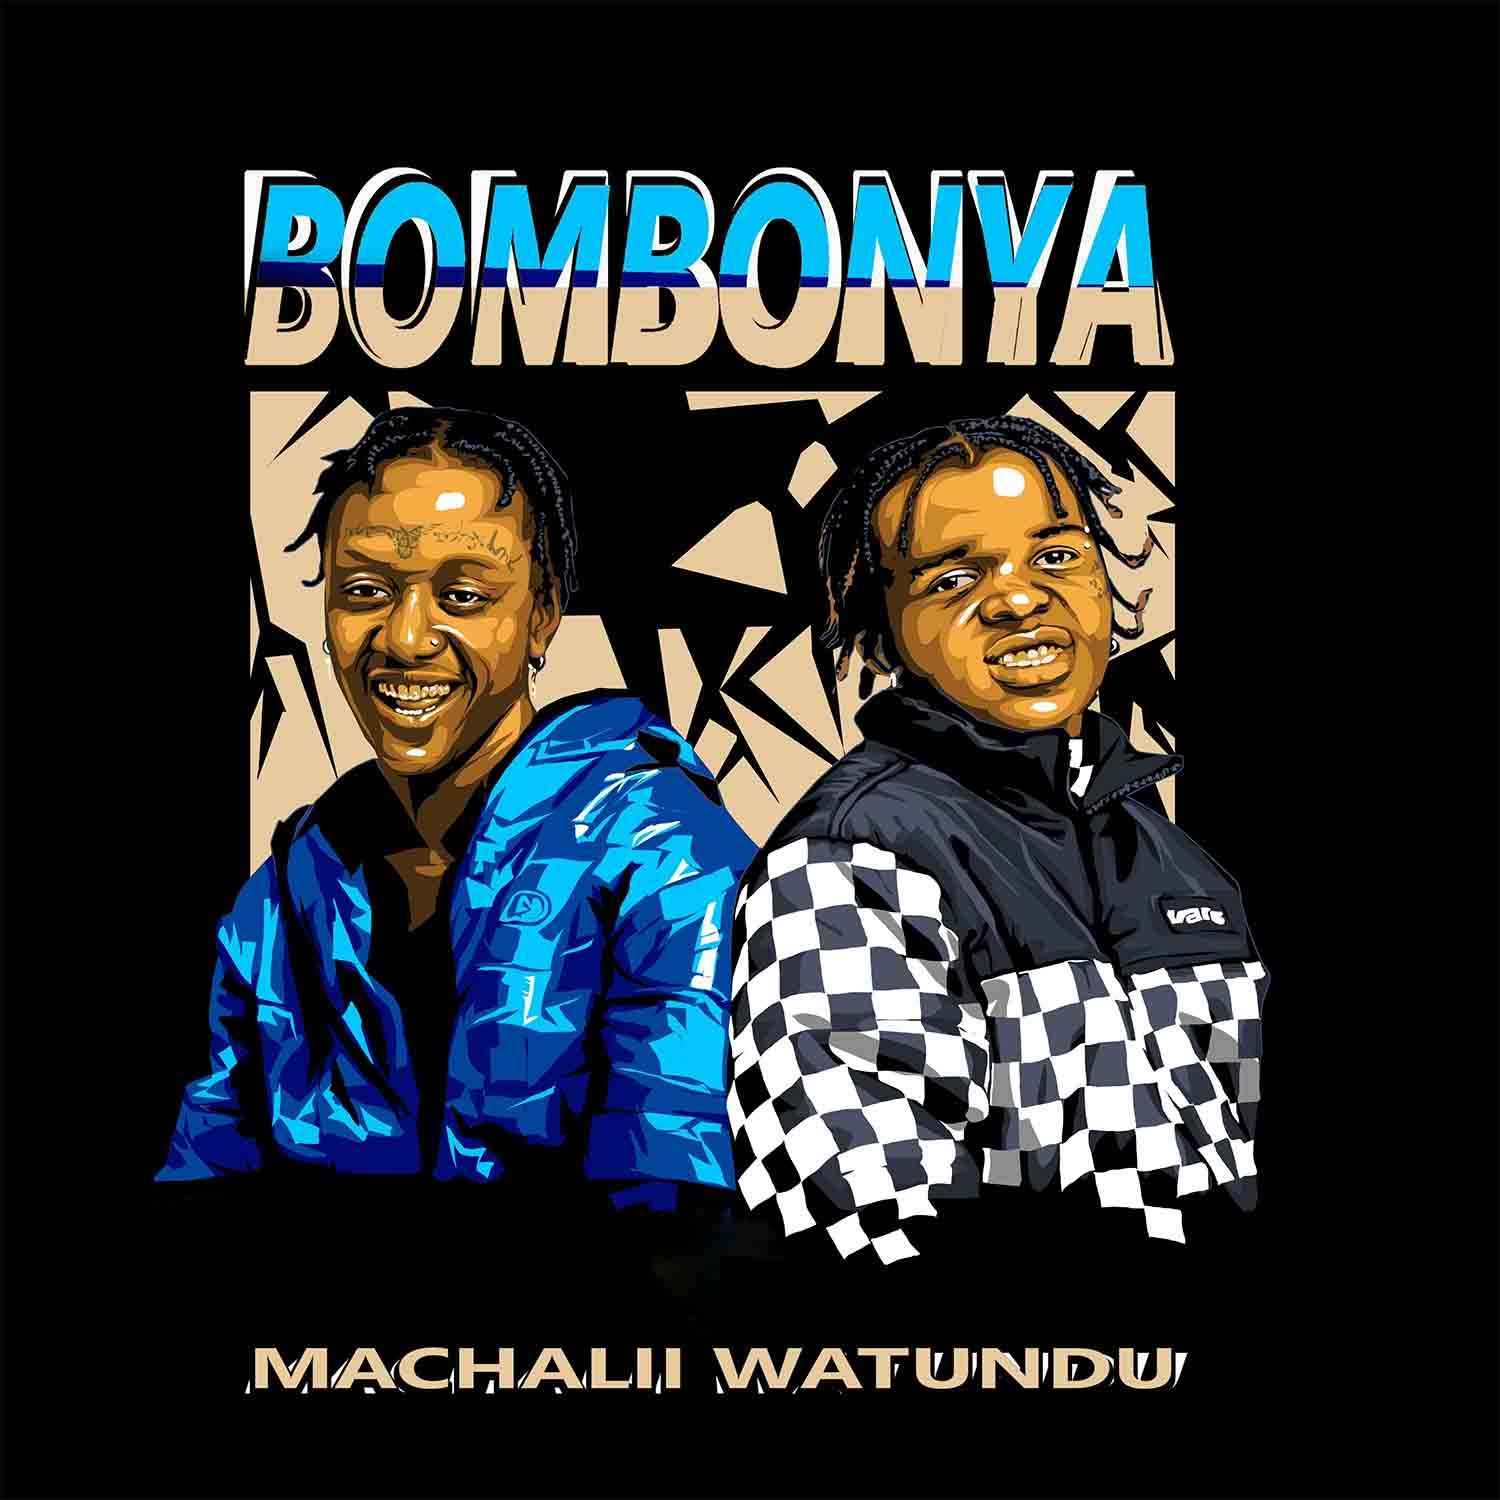 Machalii Watundu - Bombonya Album Download